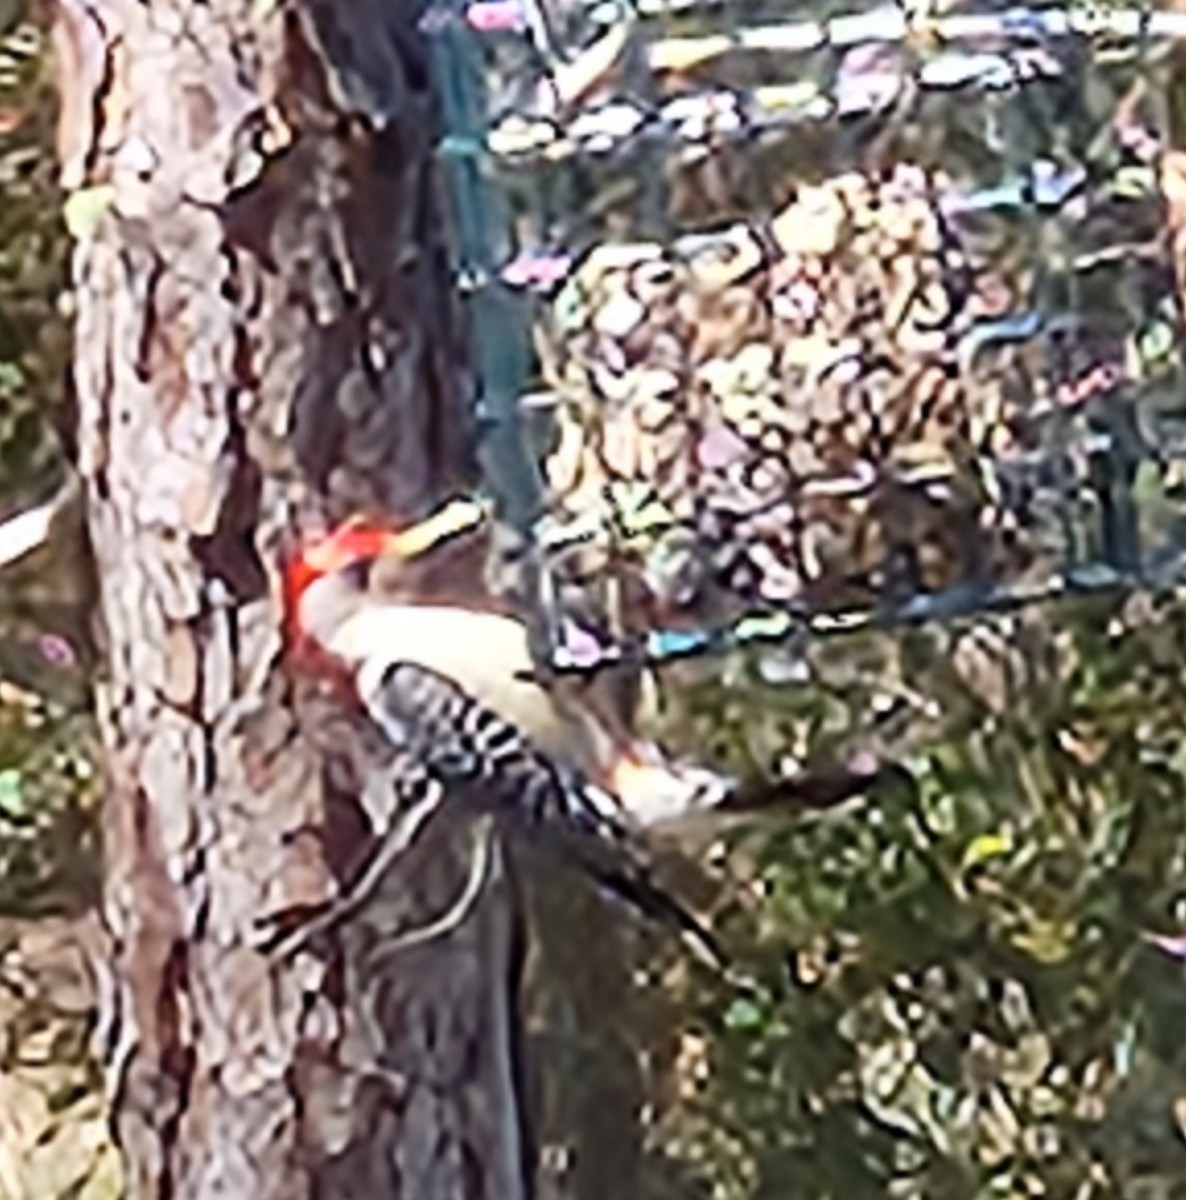 Red-bellied Woodpecker - Sheril MANCINO